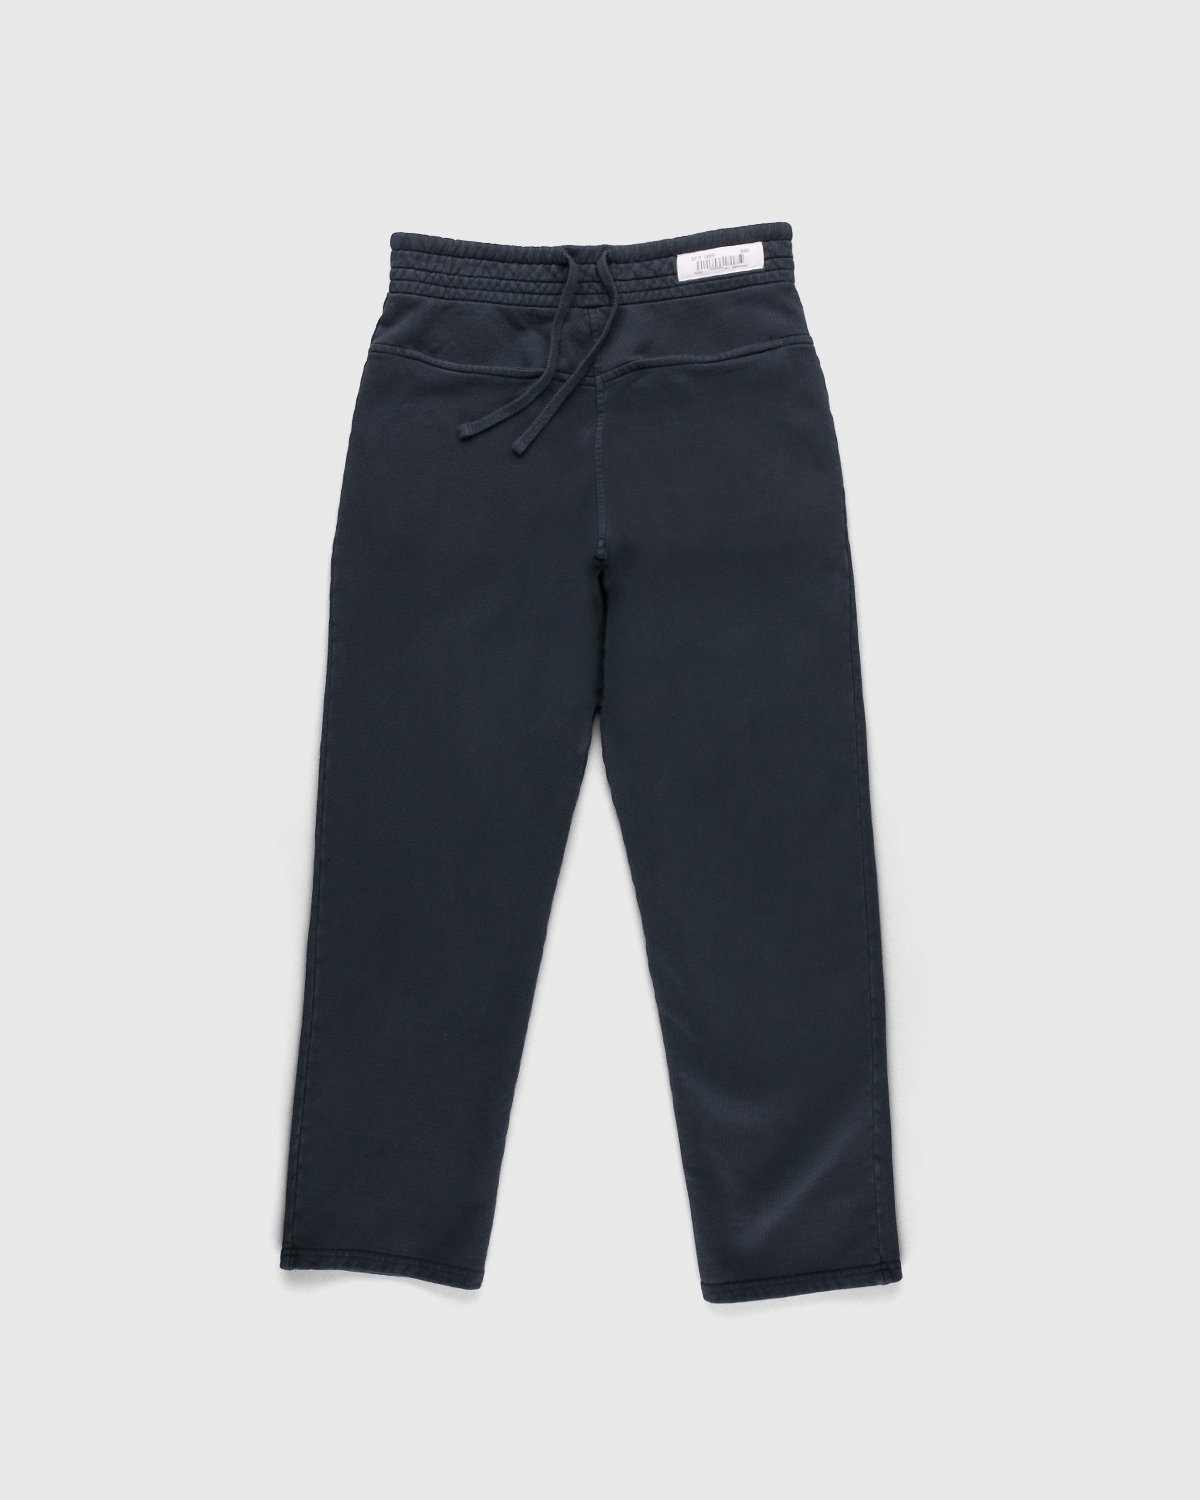 Darryl Brown - Gym Pants Vintage Black - Clothing - Black - Image 1